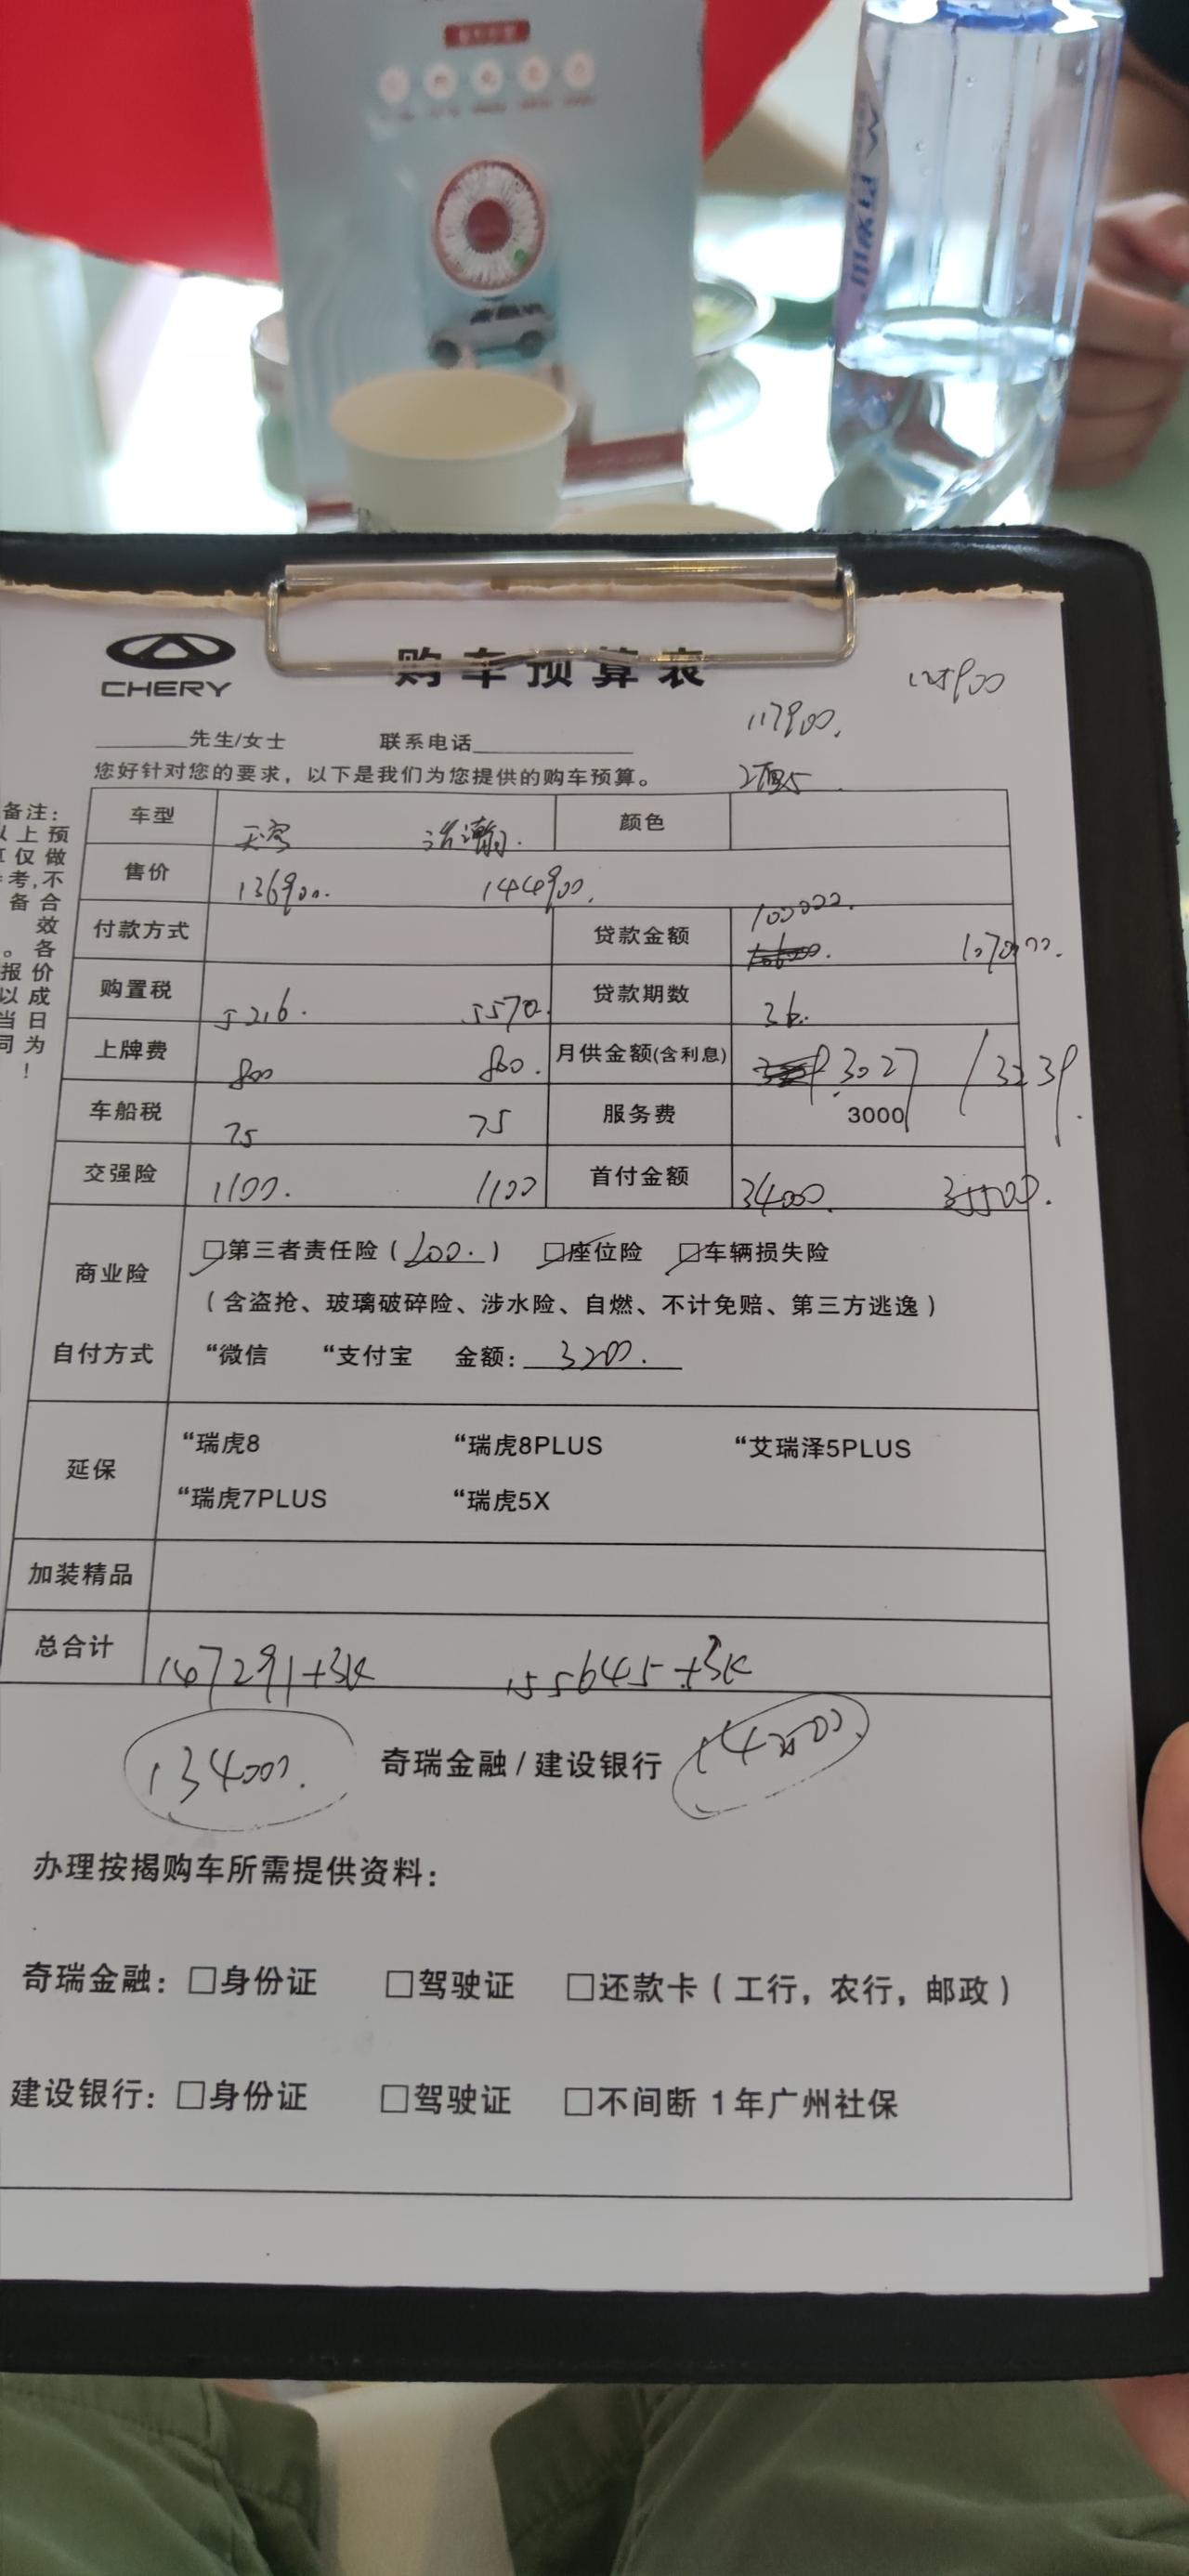 奇瑞瑞虎8 PRO 坐标广州，国庆到店谈的价格，感觉水分太大了，各位老板有没有广州或者广州周边价格低的。抽时间过去谈谈价